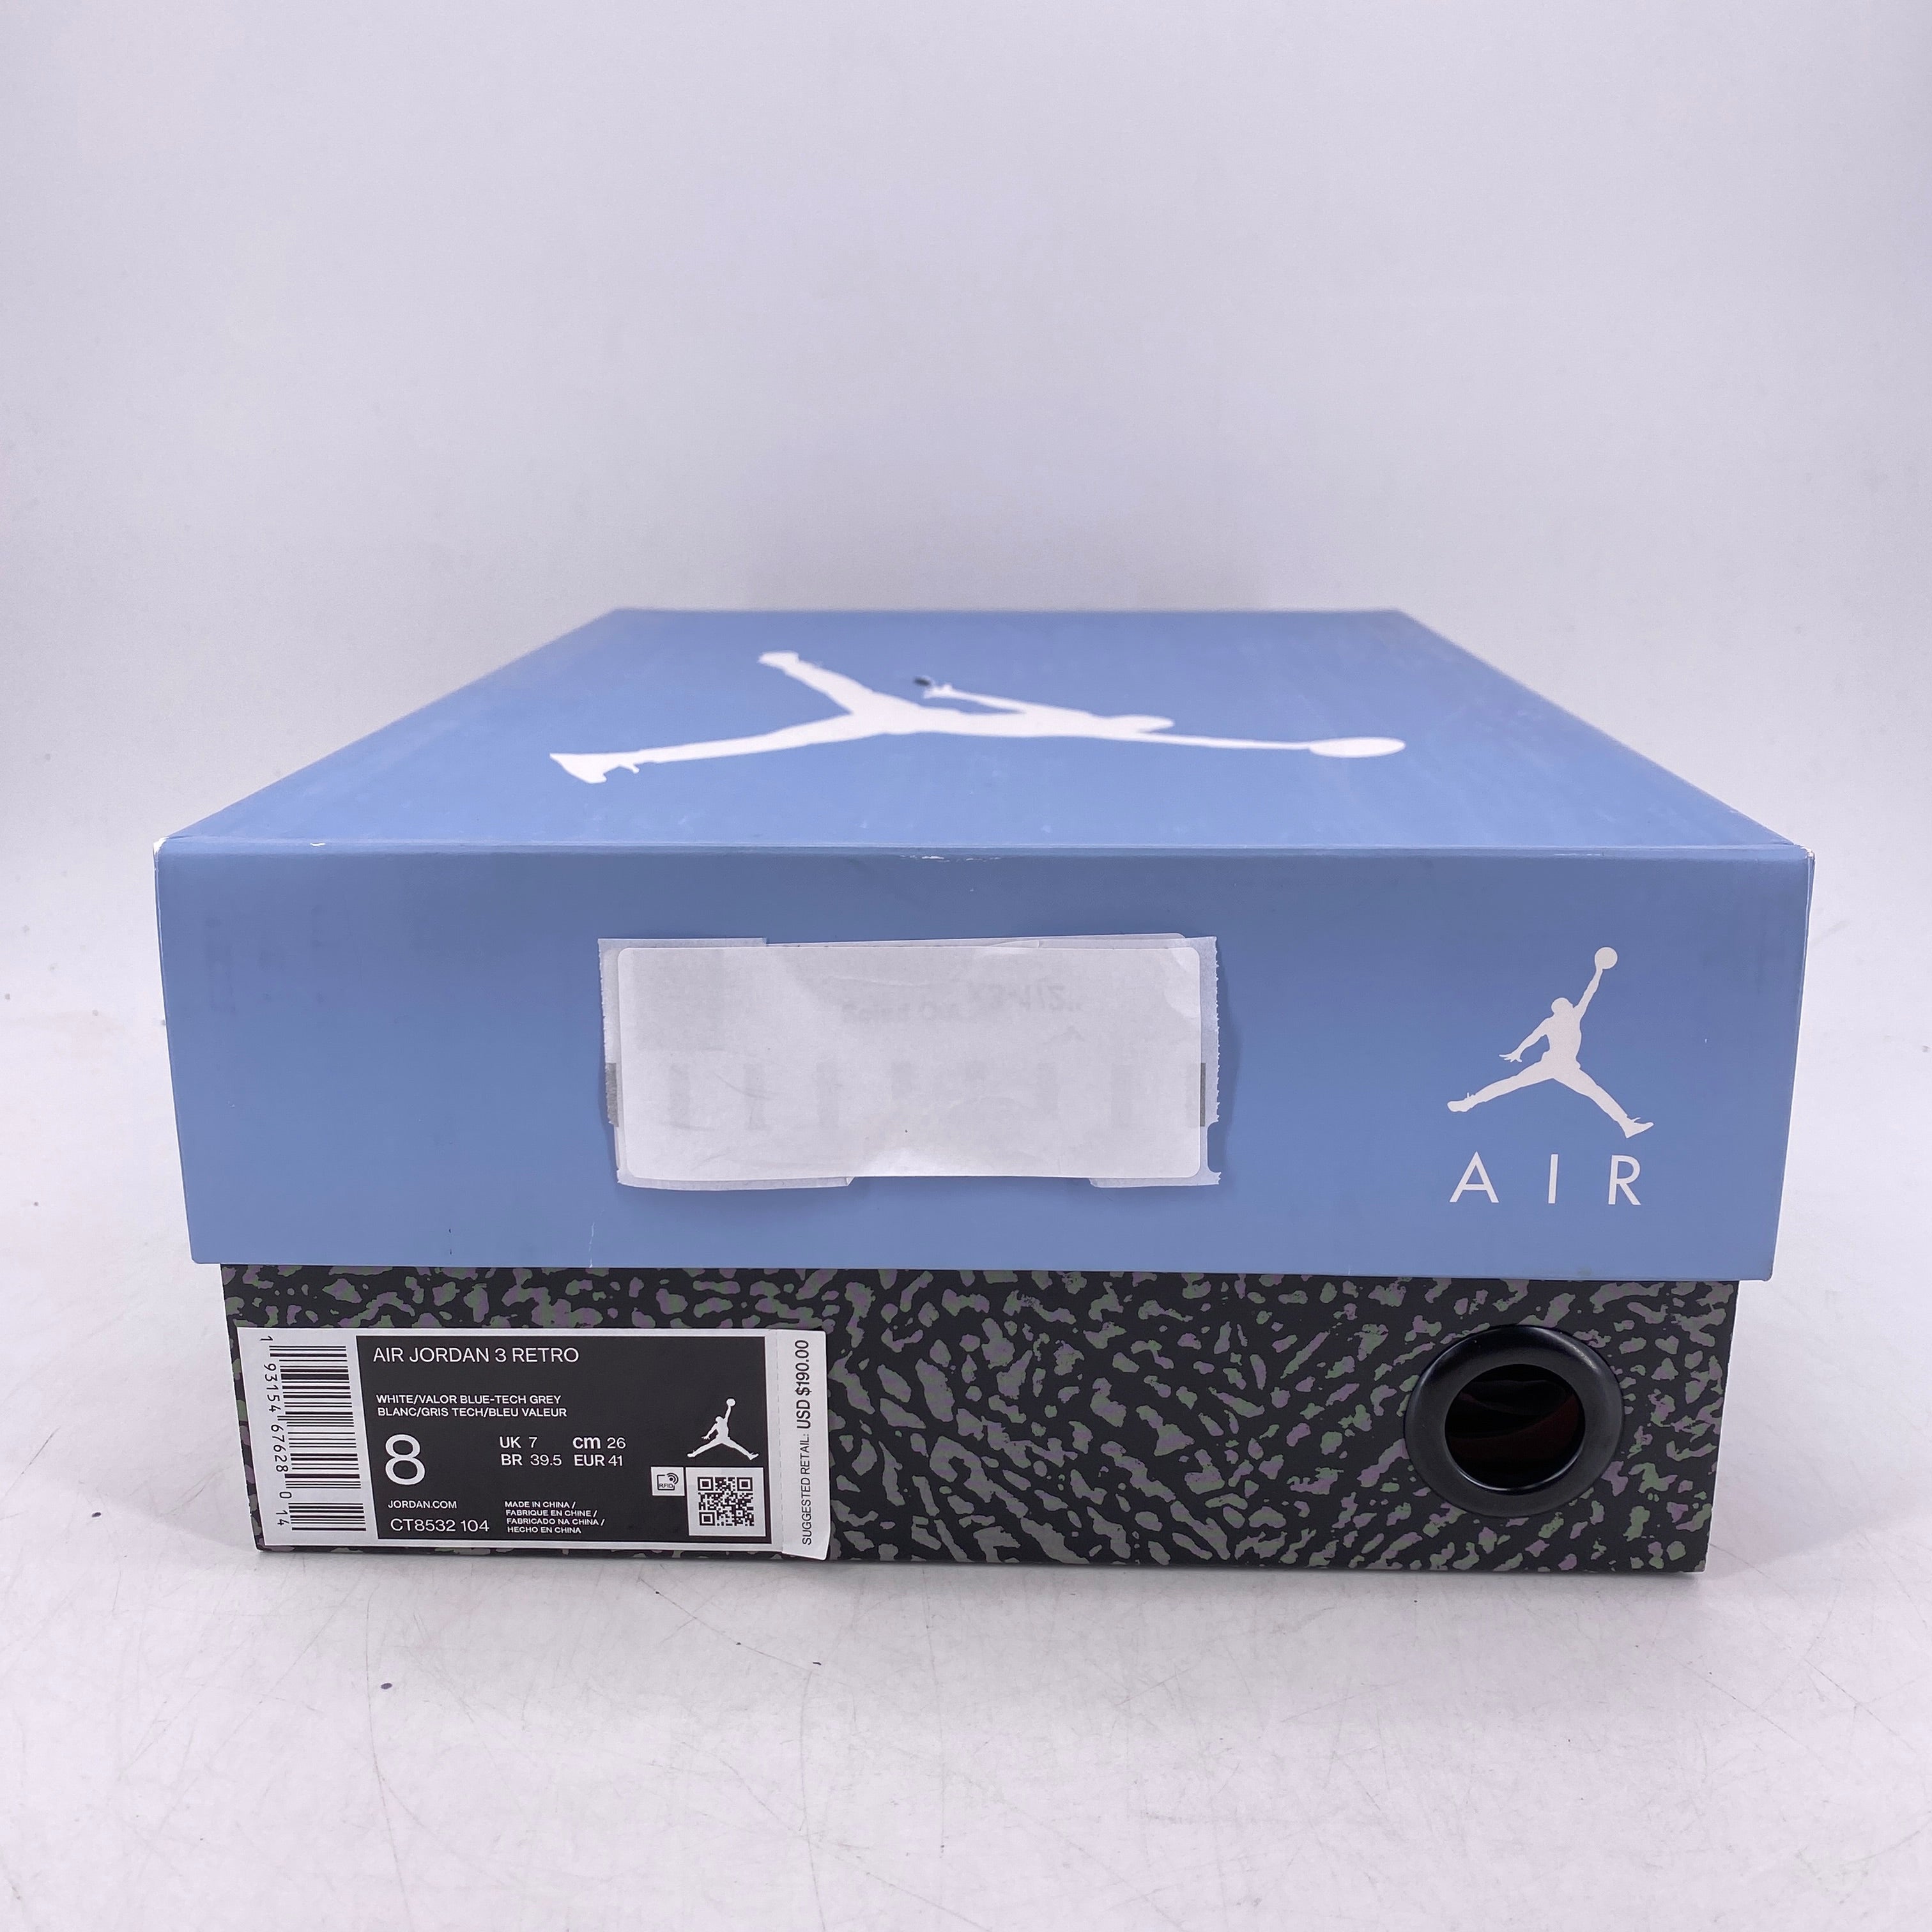 Air Jordan 3 Retro &quot;Unc&quot; 2019 Used Size 8